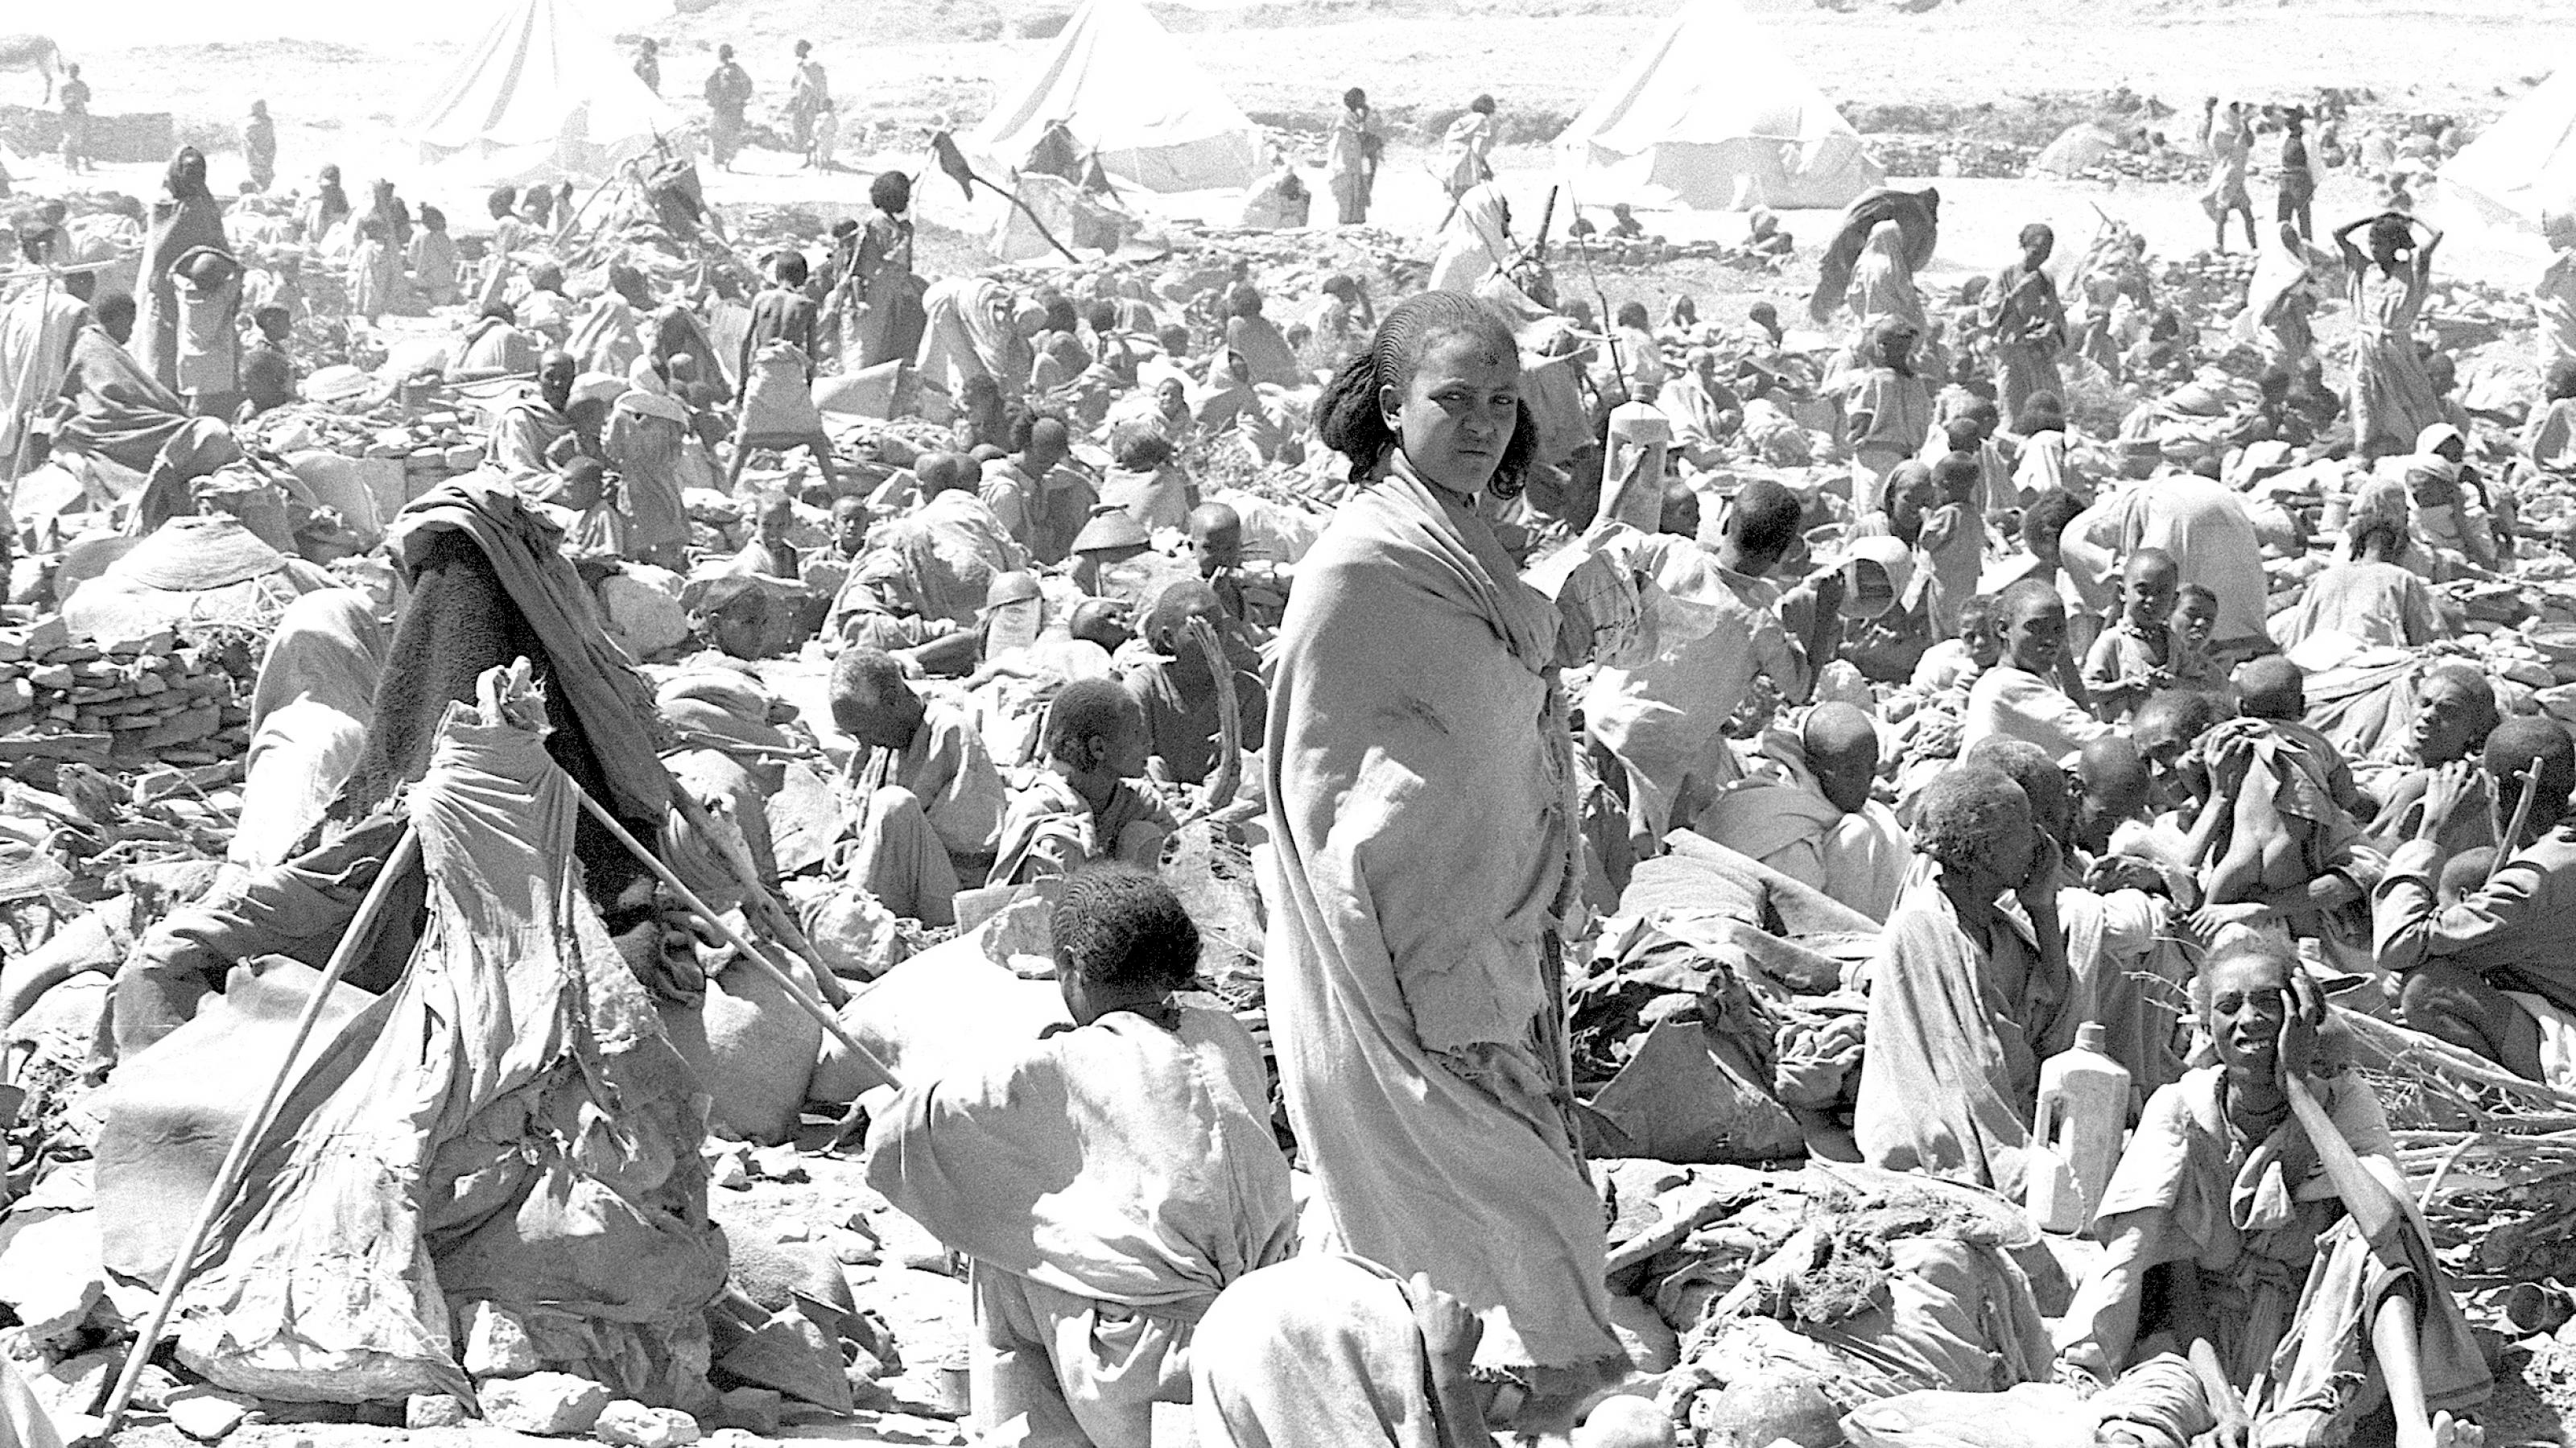 In einer Wüstengegend warten Dutzende Menschen auf Hilfe. In der Mitte des Bildes steht eine junge Frau und blickt ernst in die Kamera. Ein Flüchtlingslager während der Hungerkrise 1984 in Äthiopien. Foto in Schwarz-Weiß in Sepia-Tönen.